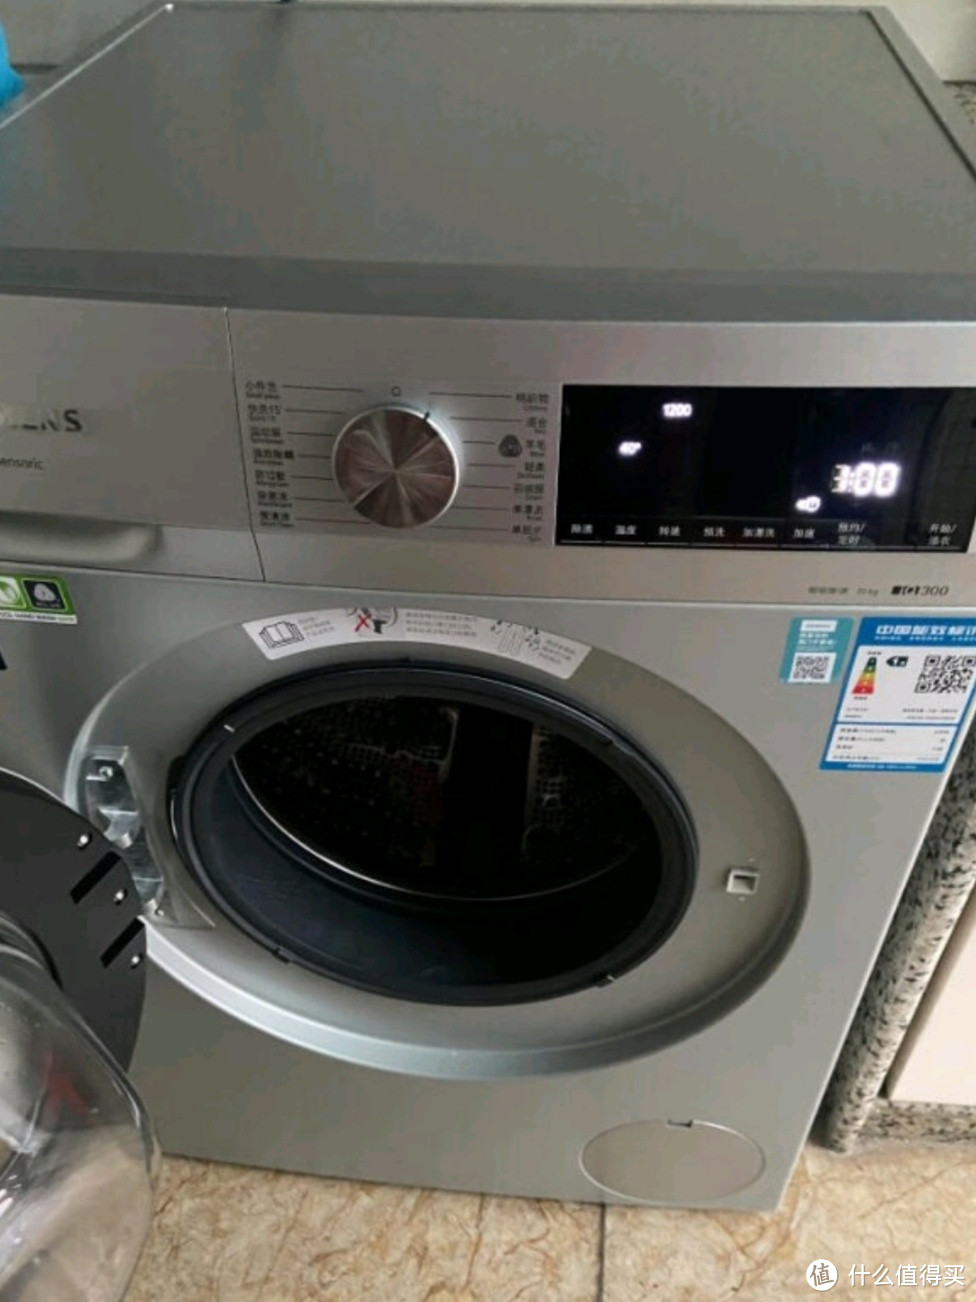 这个滚筒洗衣机非常好用